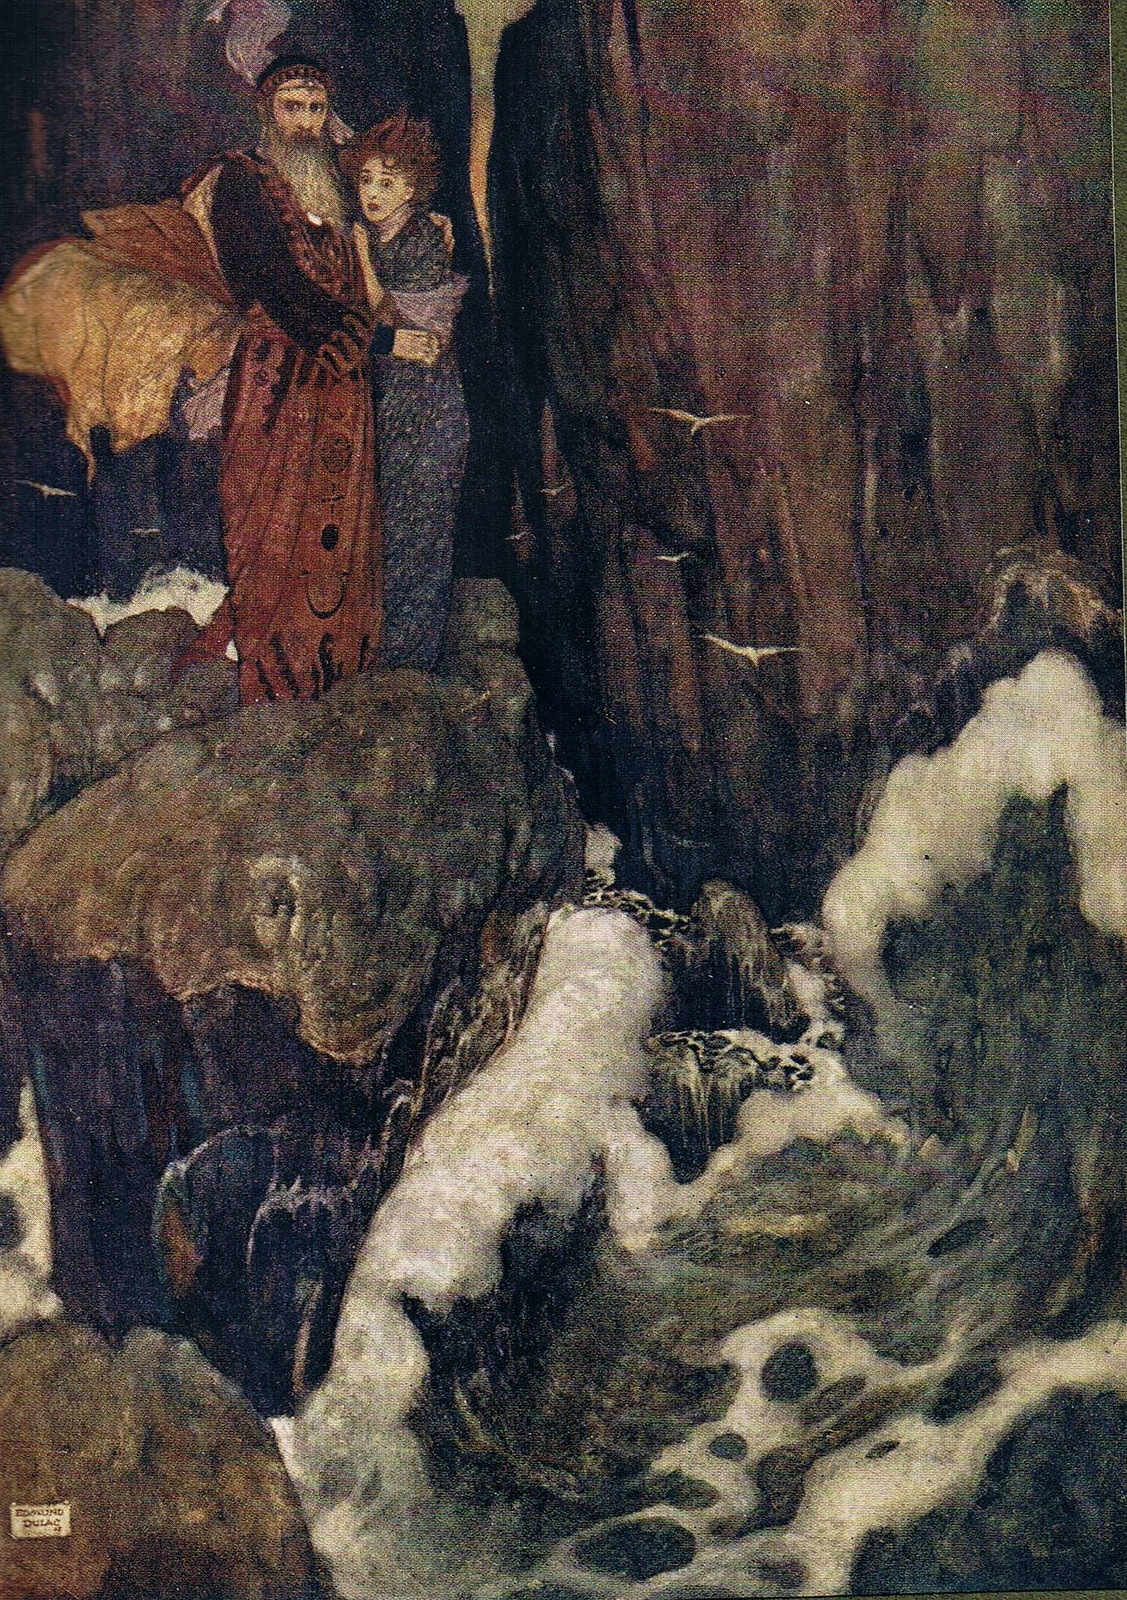 Edmund Dulac (the Tempest, 1908)